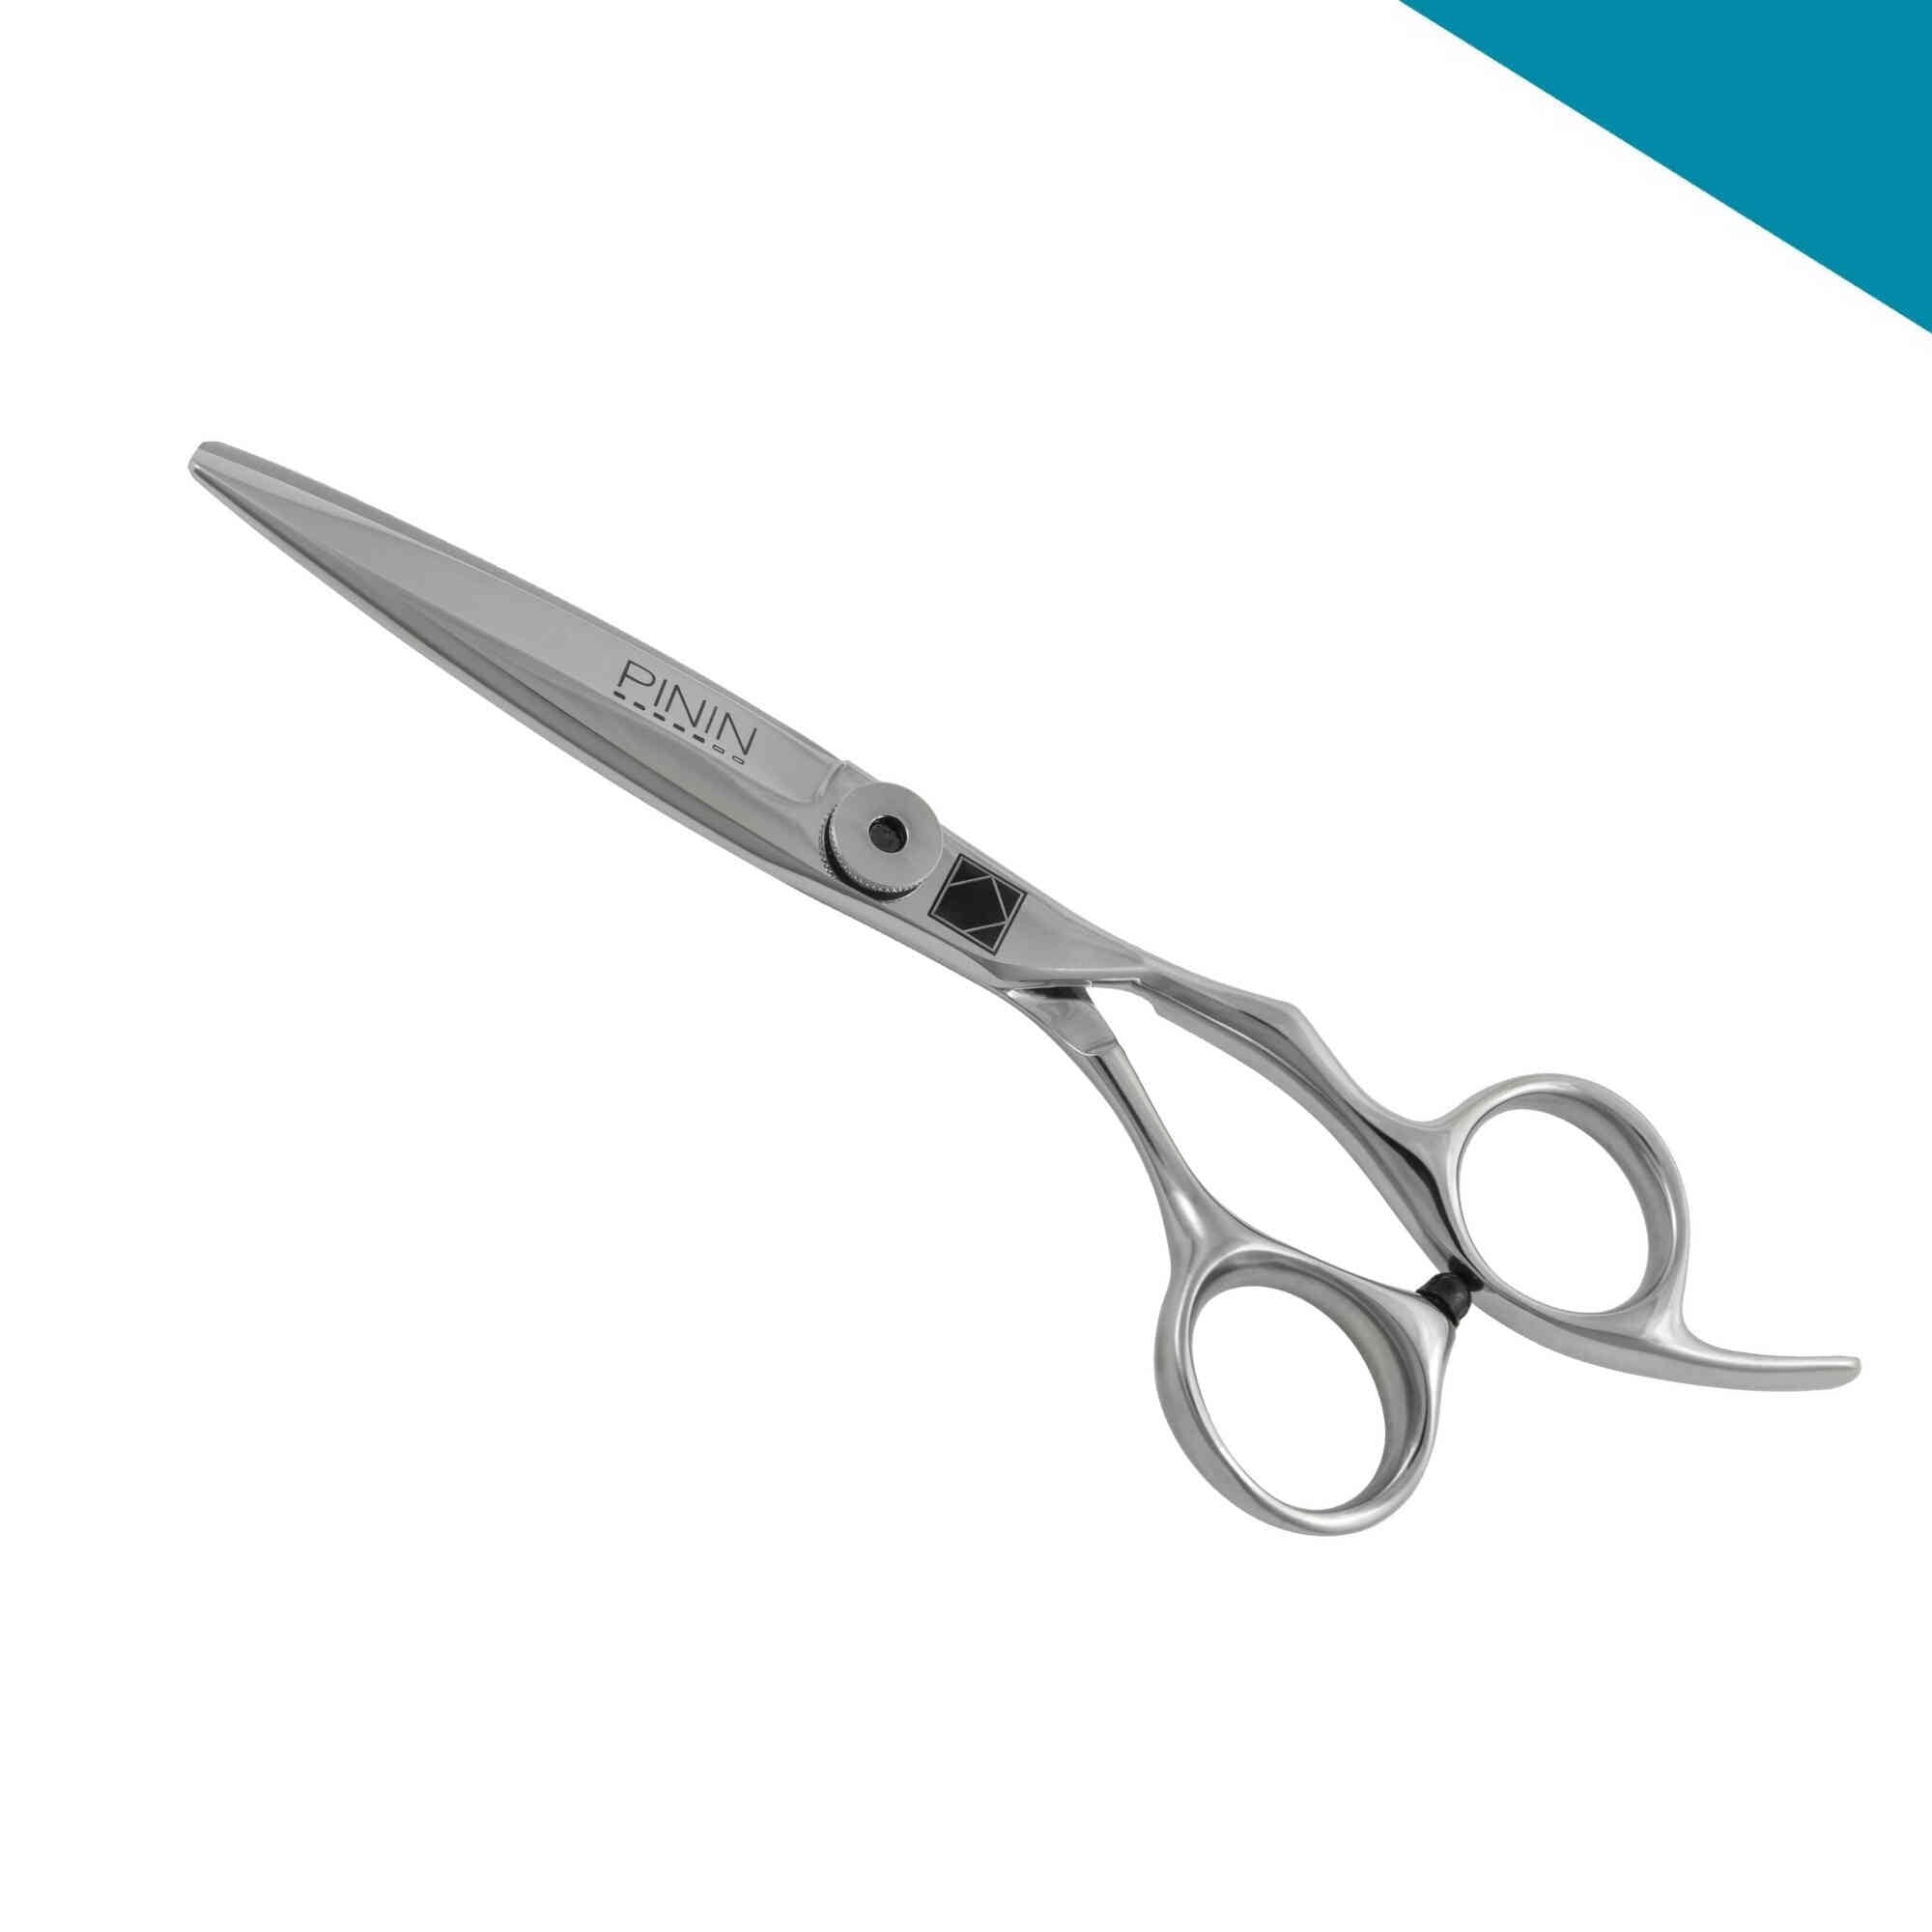 Pinin Q5 Liz Slider hairdressing scissors 5.85"